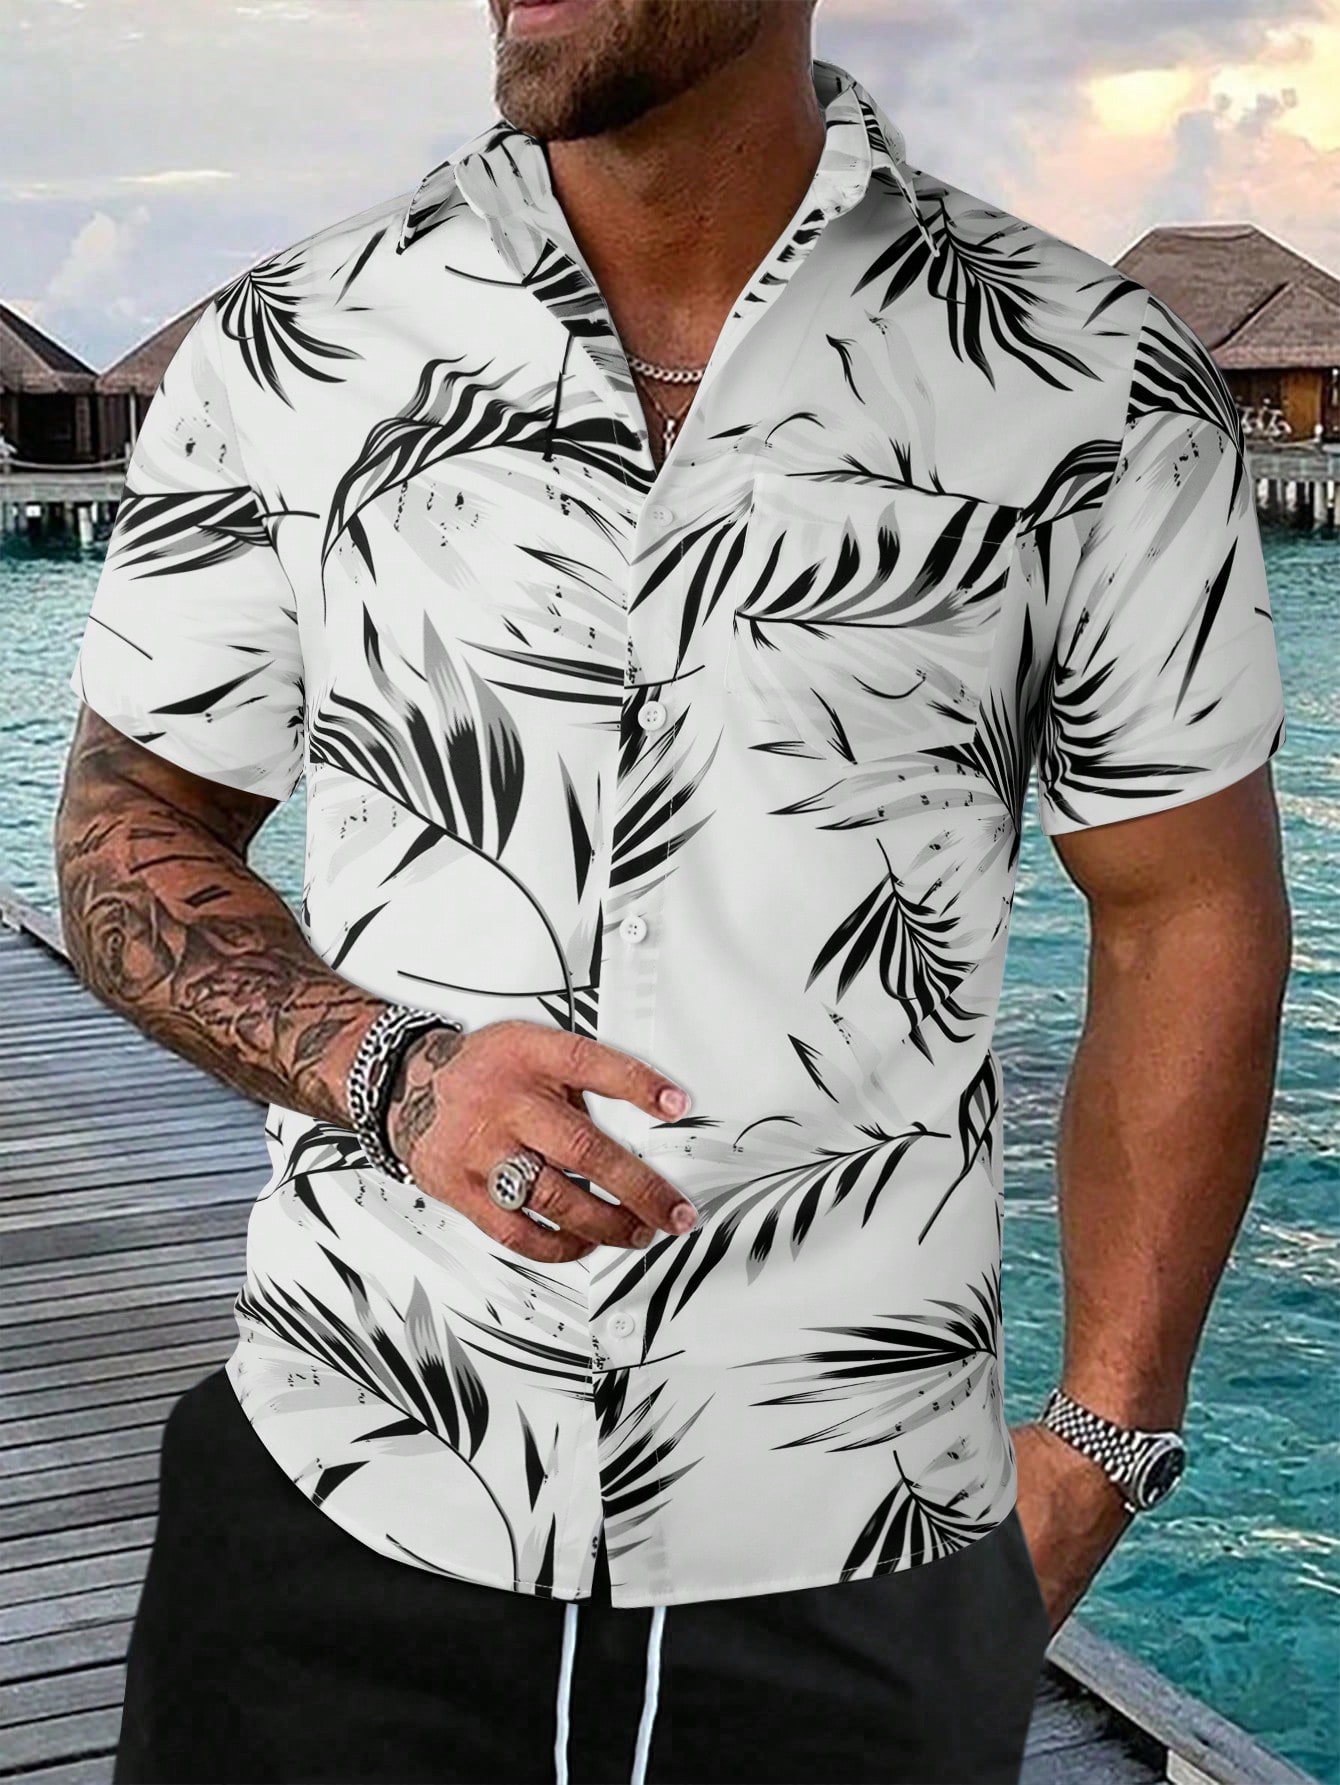 Мужская рубашка с короткими рукавами и принтом листьев на пуговицах Manfinity RSRT, черное и белое мужская пляжная рубашка с коротким рукавом белая повседневная гавайская рубашка с принтом фламинго листьев большие размеры 6xl